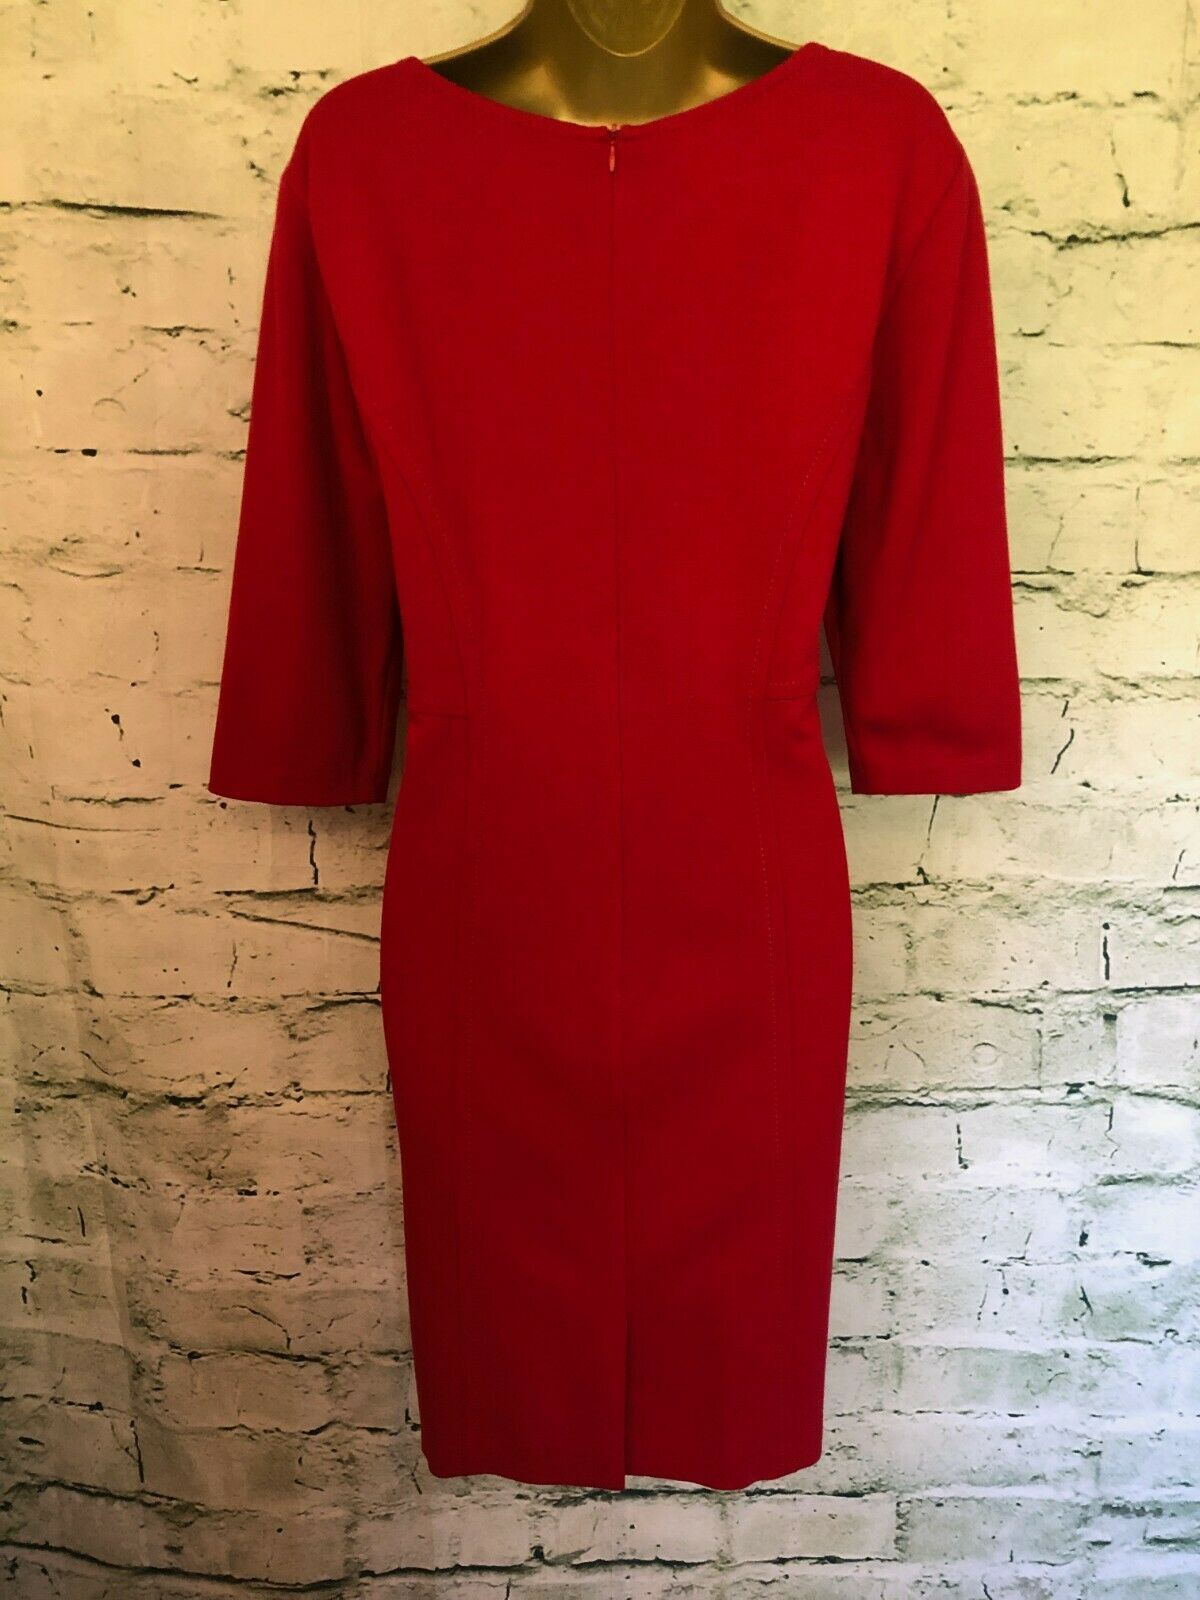 Gerry Weber Women's Red Short Sleeved Shift Dress UK 16 US 12 EU 44 Timeless Fashions